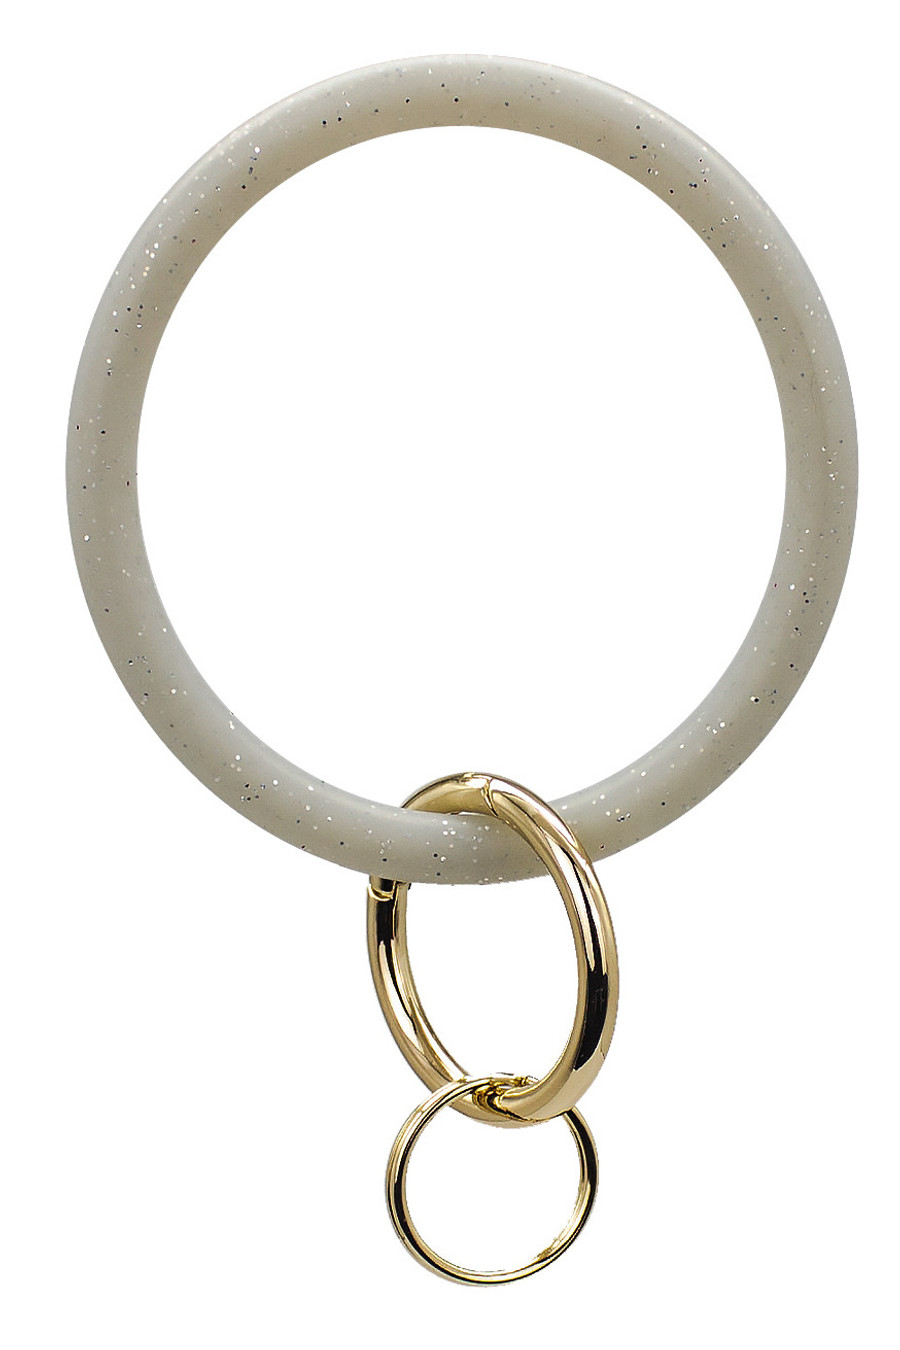 Bamboo Bangle Bracelet Key Ring